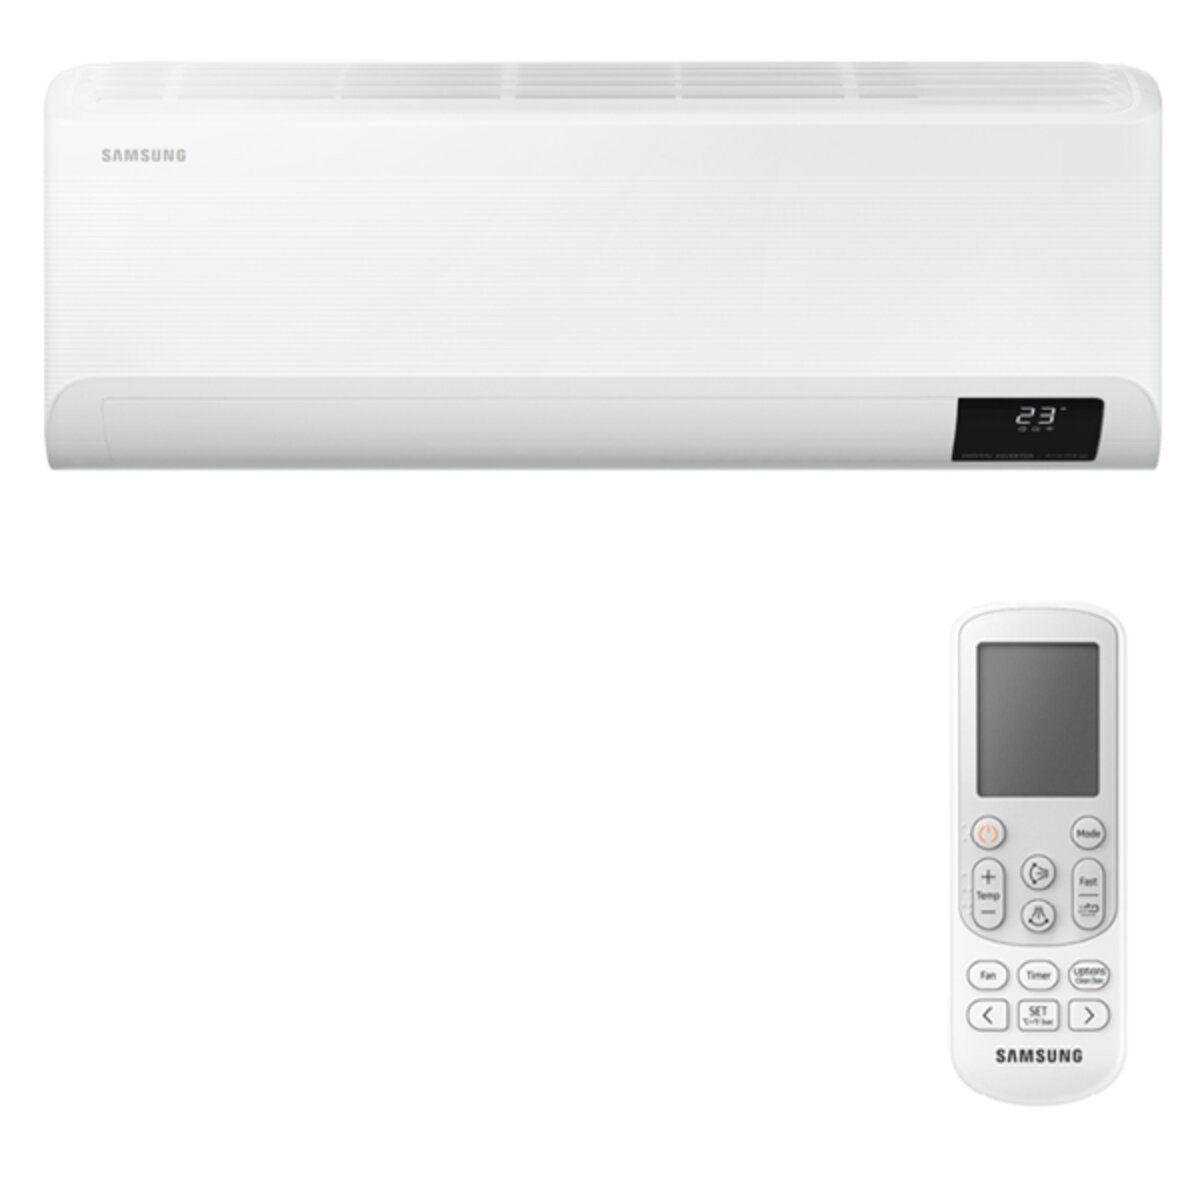 Samsung Cebu WLAN Klimaanlage Penta Split 7000 + 7000 + 9000 + 9000 + 12000 BTU Wechselrichter A++ WLAN Außengerät 10,0 kW